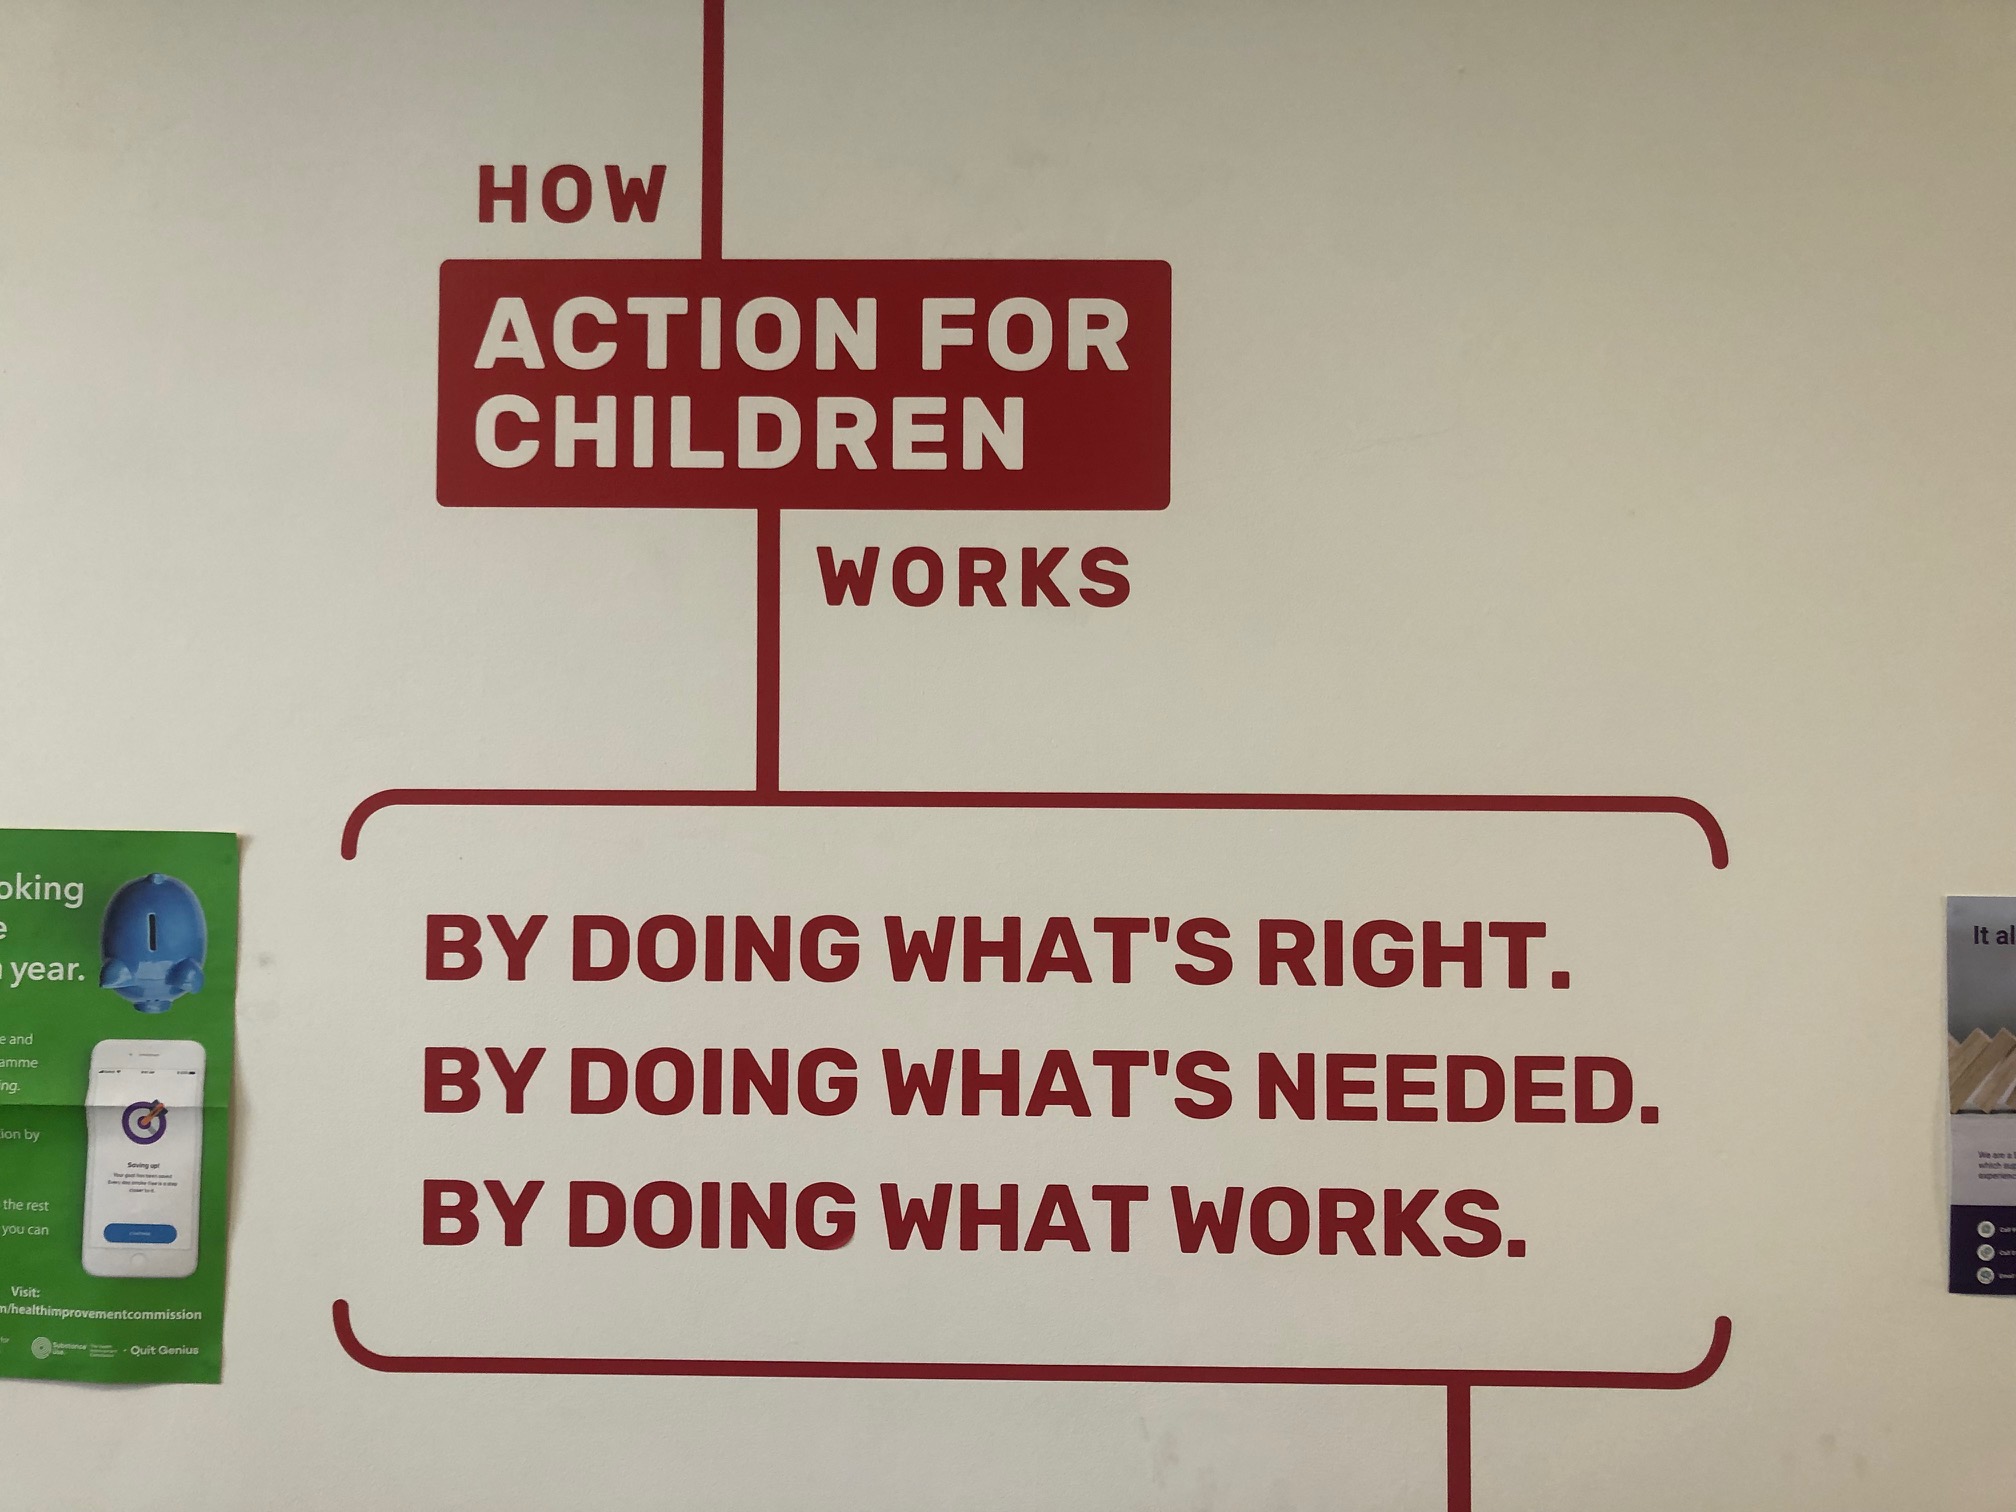 Action_for_children.jpg